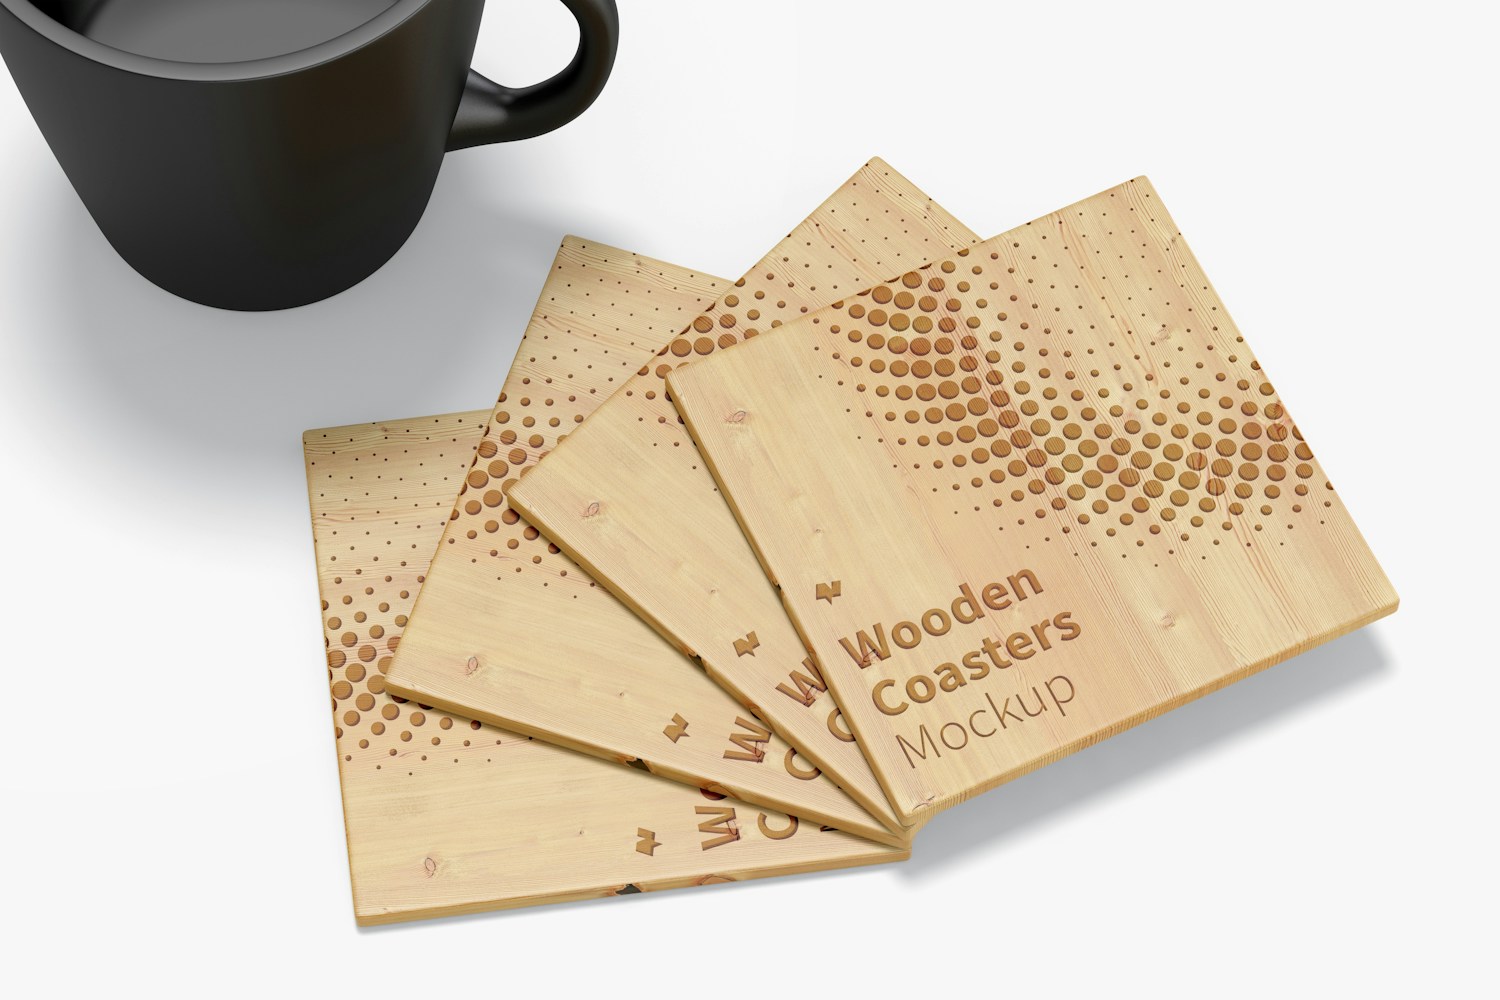 Wooden Coasters Mockup, Close-Up